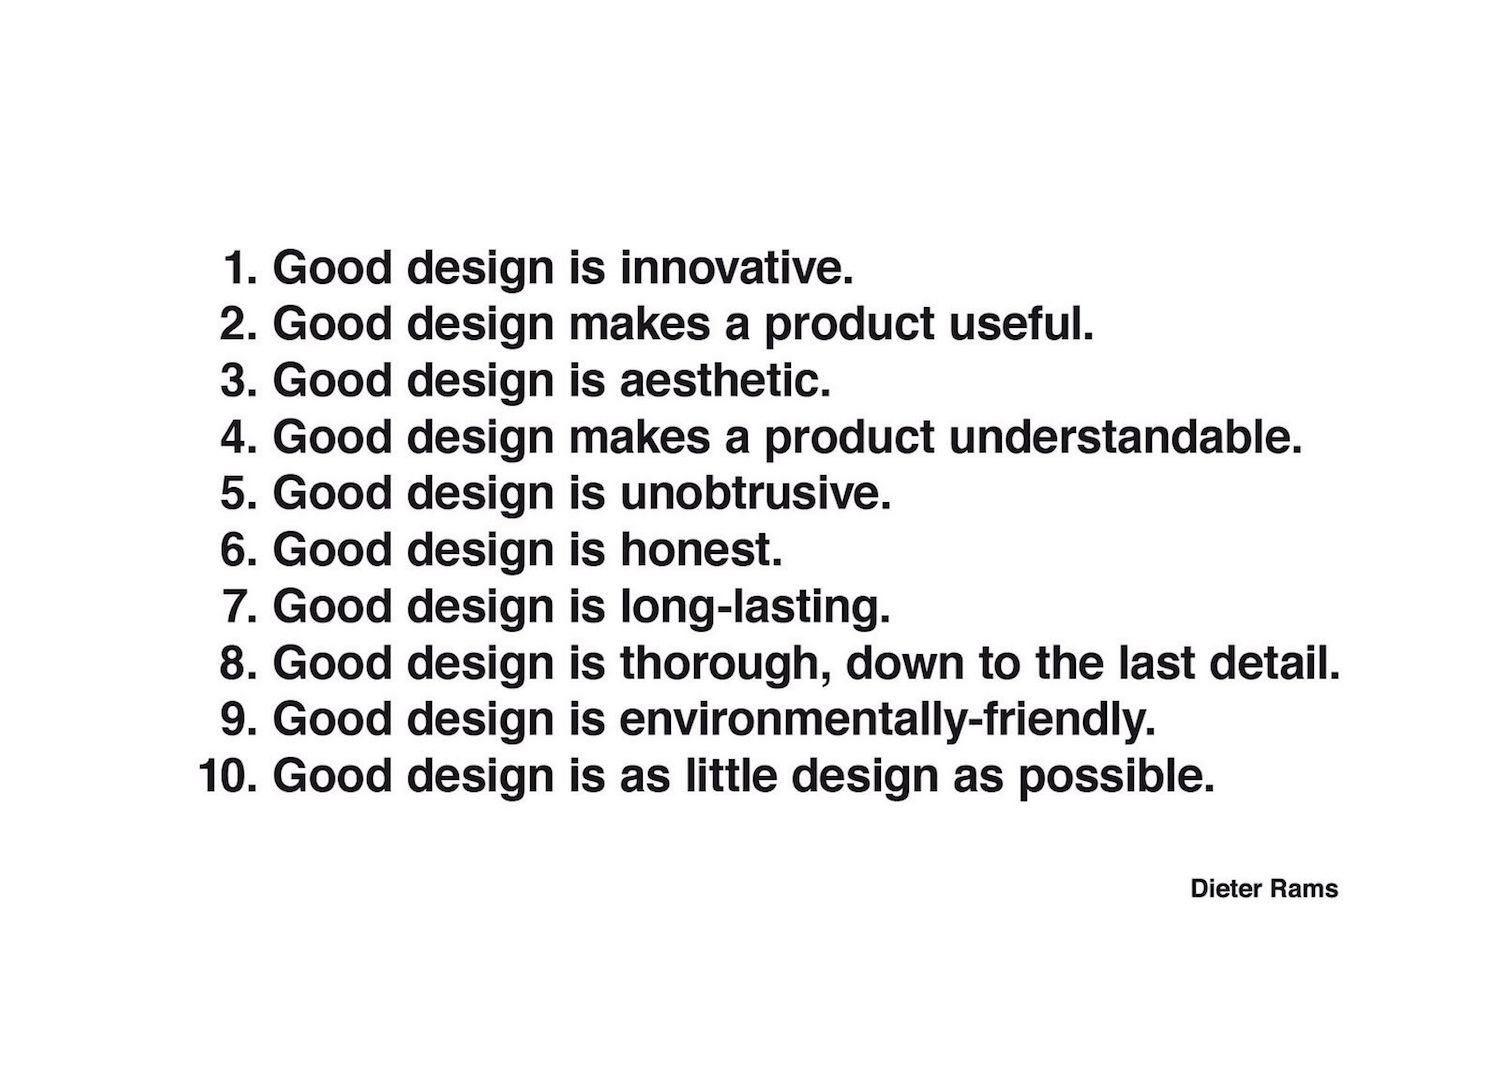 Los 10 principios del buen diseño segun Dieter Rams. Good design is...